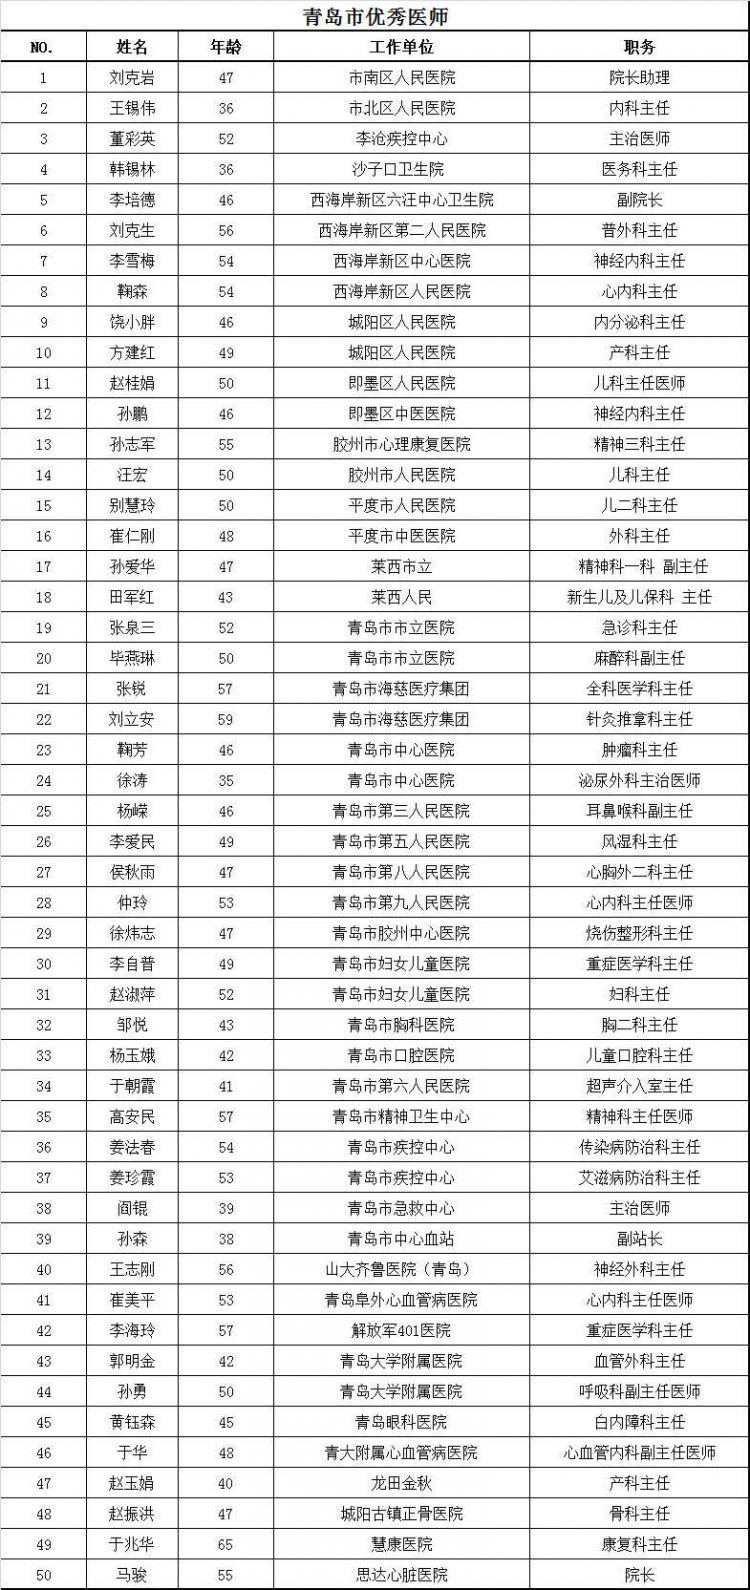 青岛评选出50名优秀医师 名单公示看看都有谁(表格)